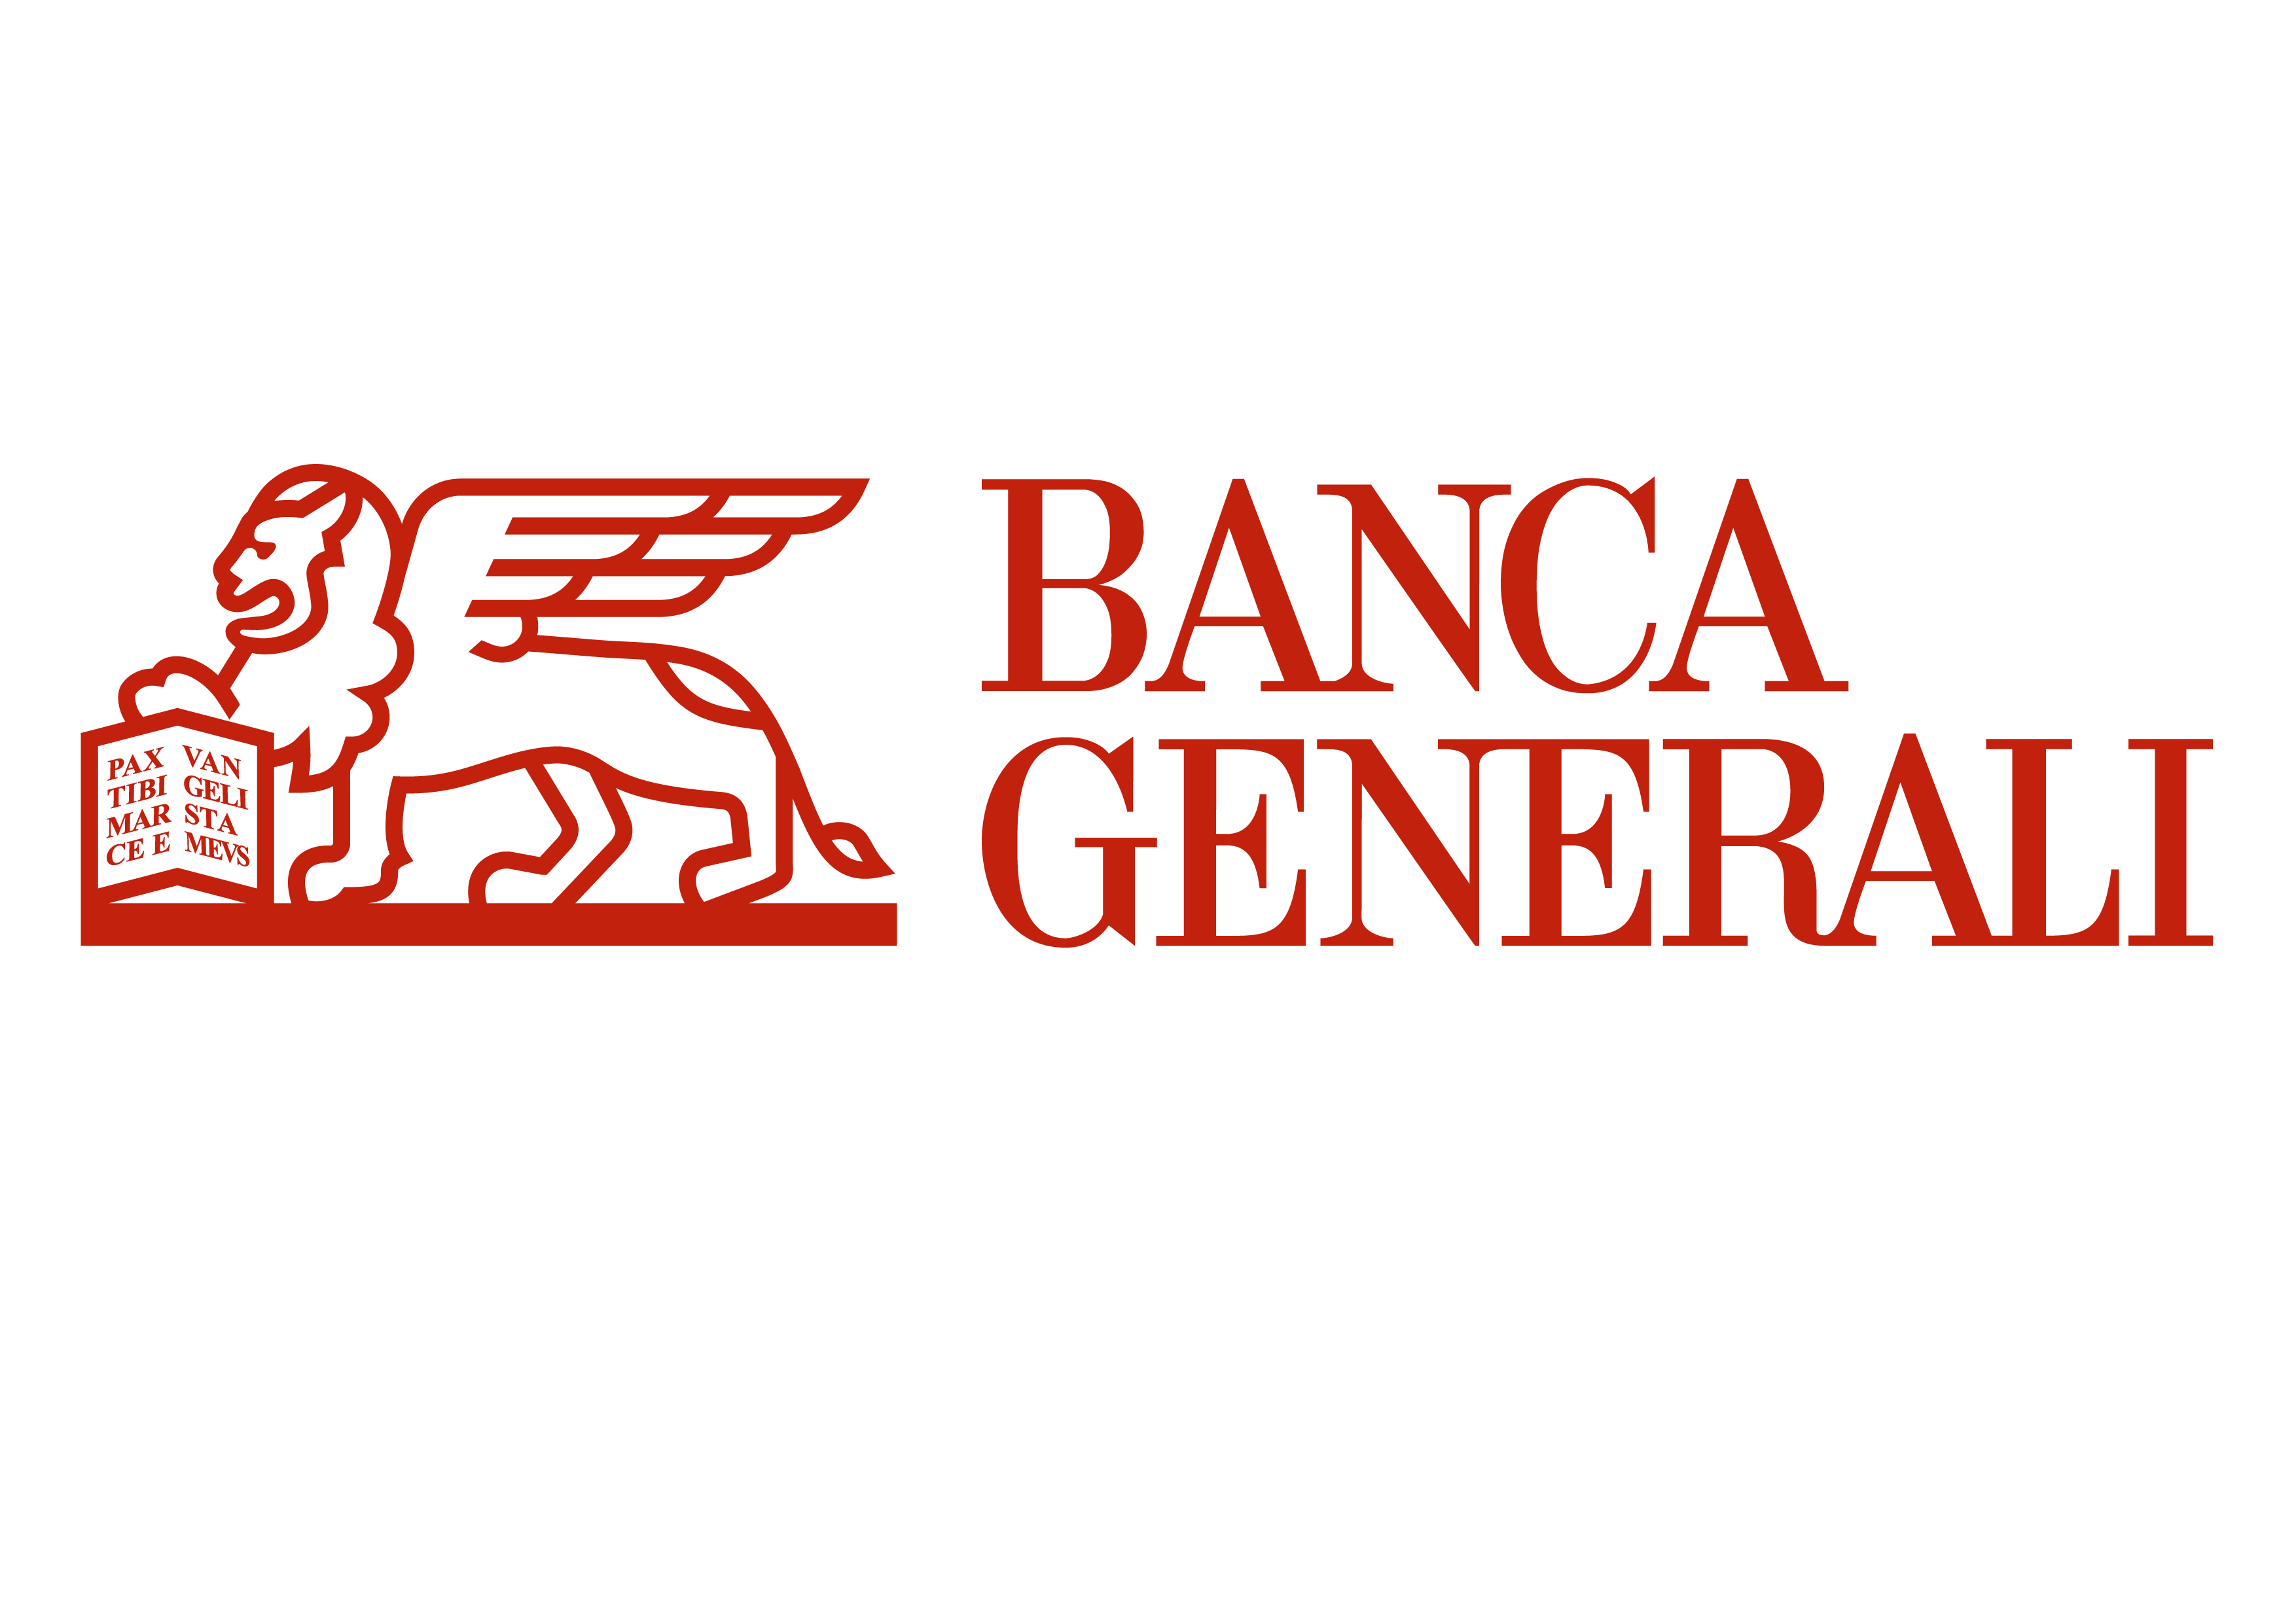 Banca Generali-Banca Generali